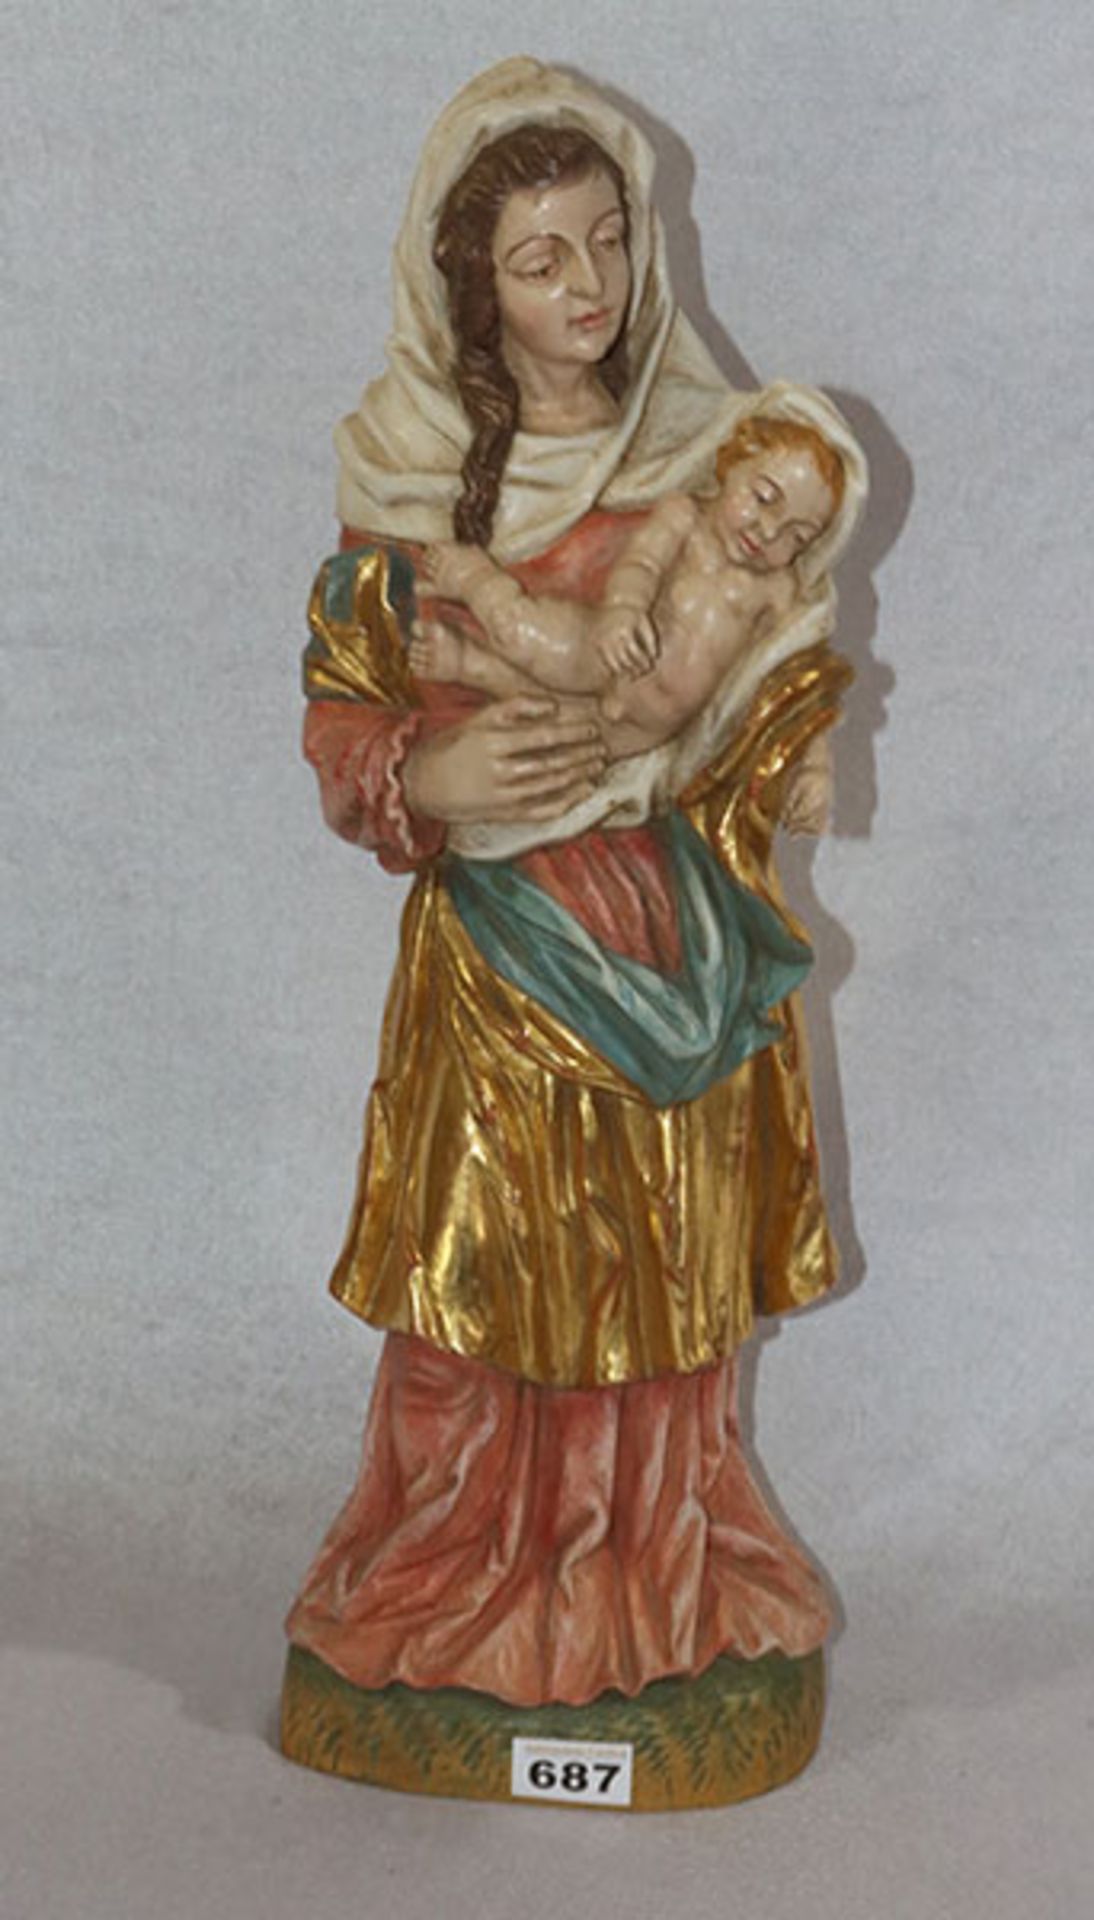 Holz Figurenskulptur 'Maria mit Kind', farbig gefaßt, H 54 cm